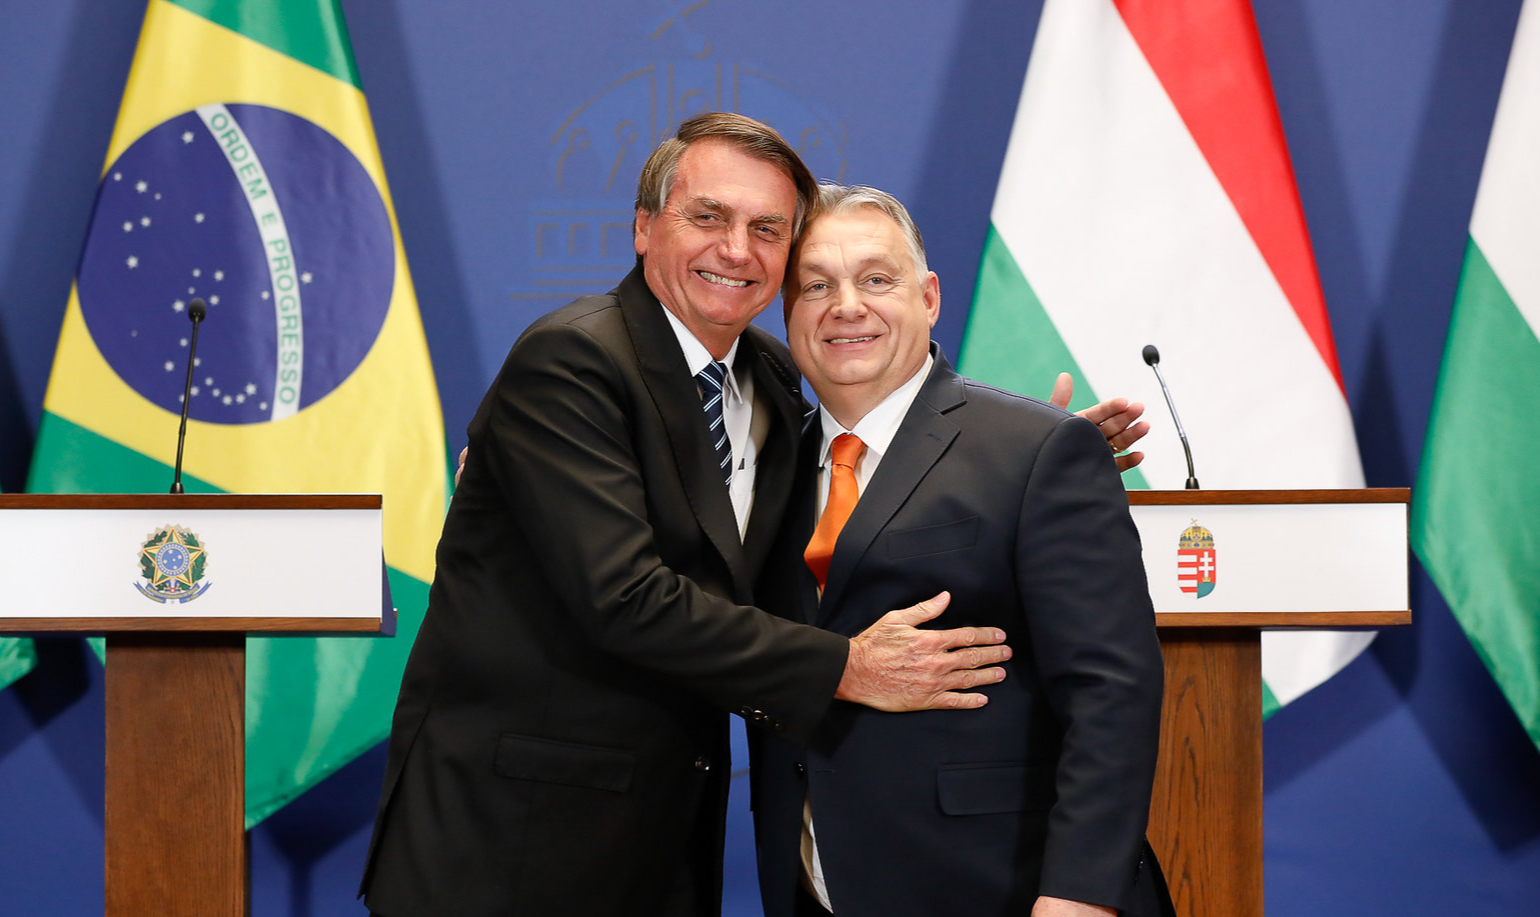 Após encontro com Putin, mandatário brasileiro se reuniu com premiê húngaro, um dos principais representantes da extrema direita na Europa